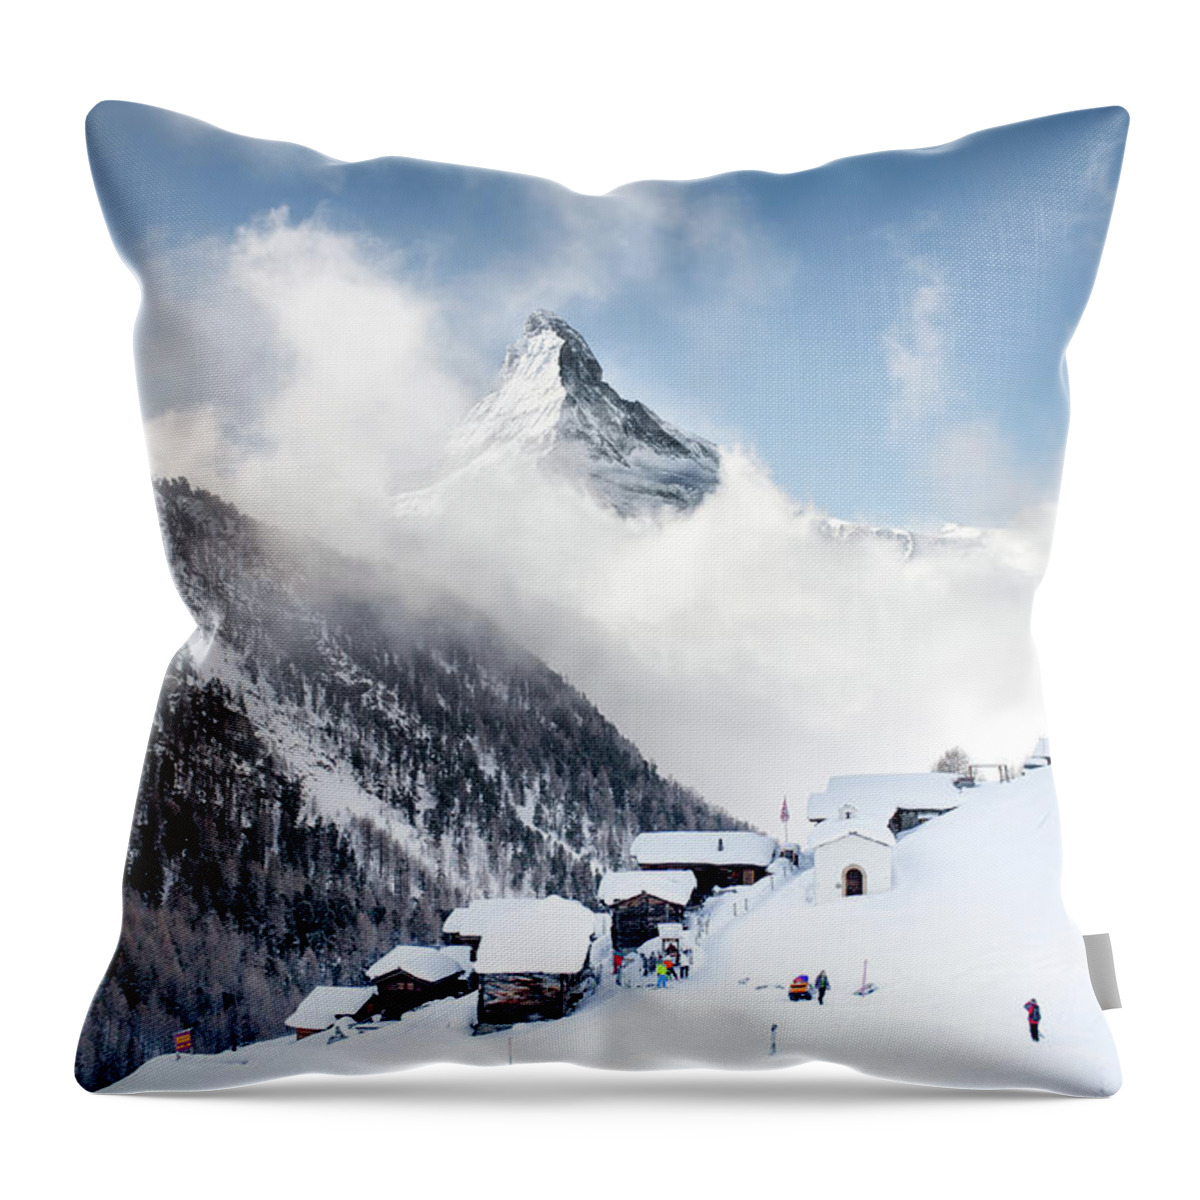 Tranquility Throw Pillow featuring the photograph Matterhorn by Steffen Schnur